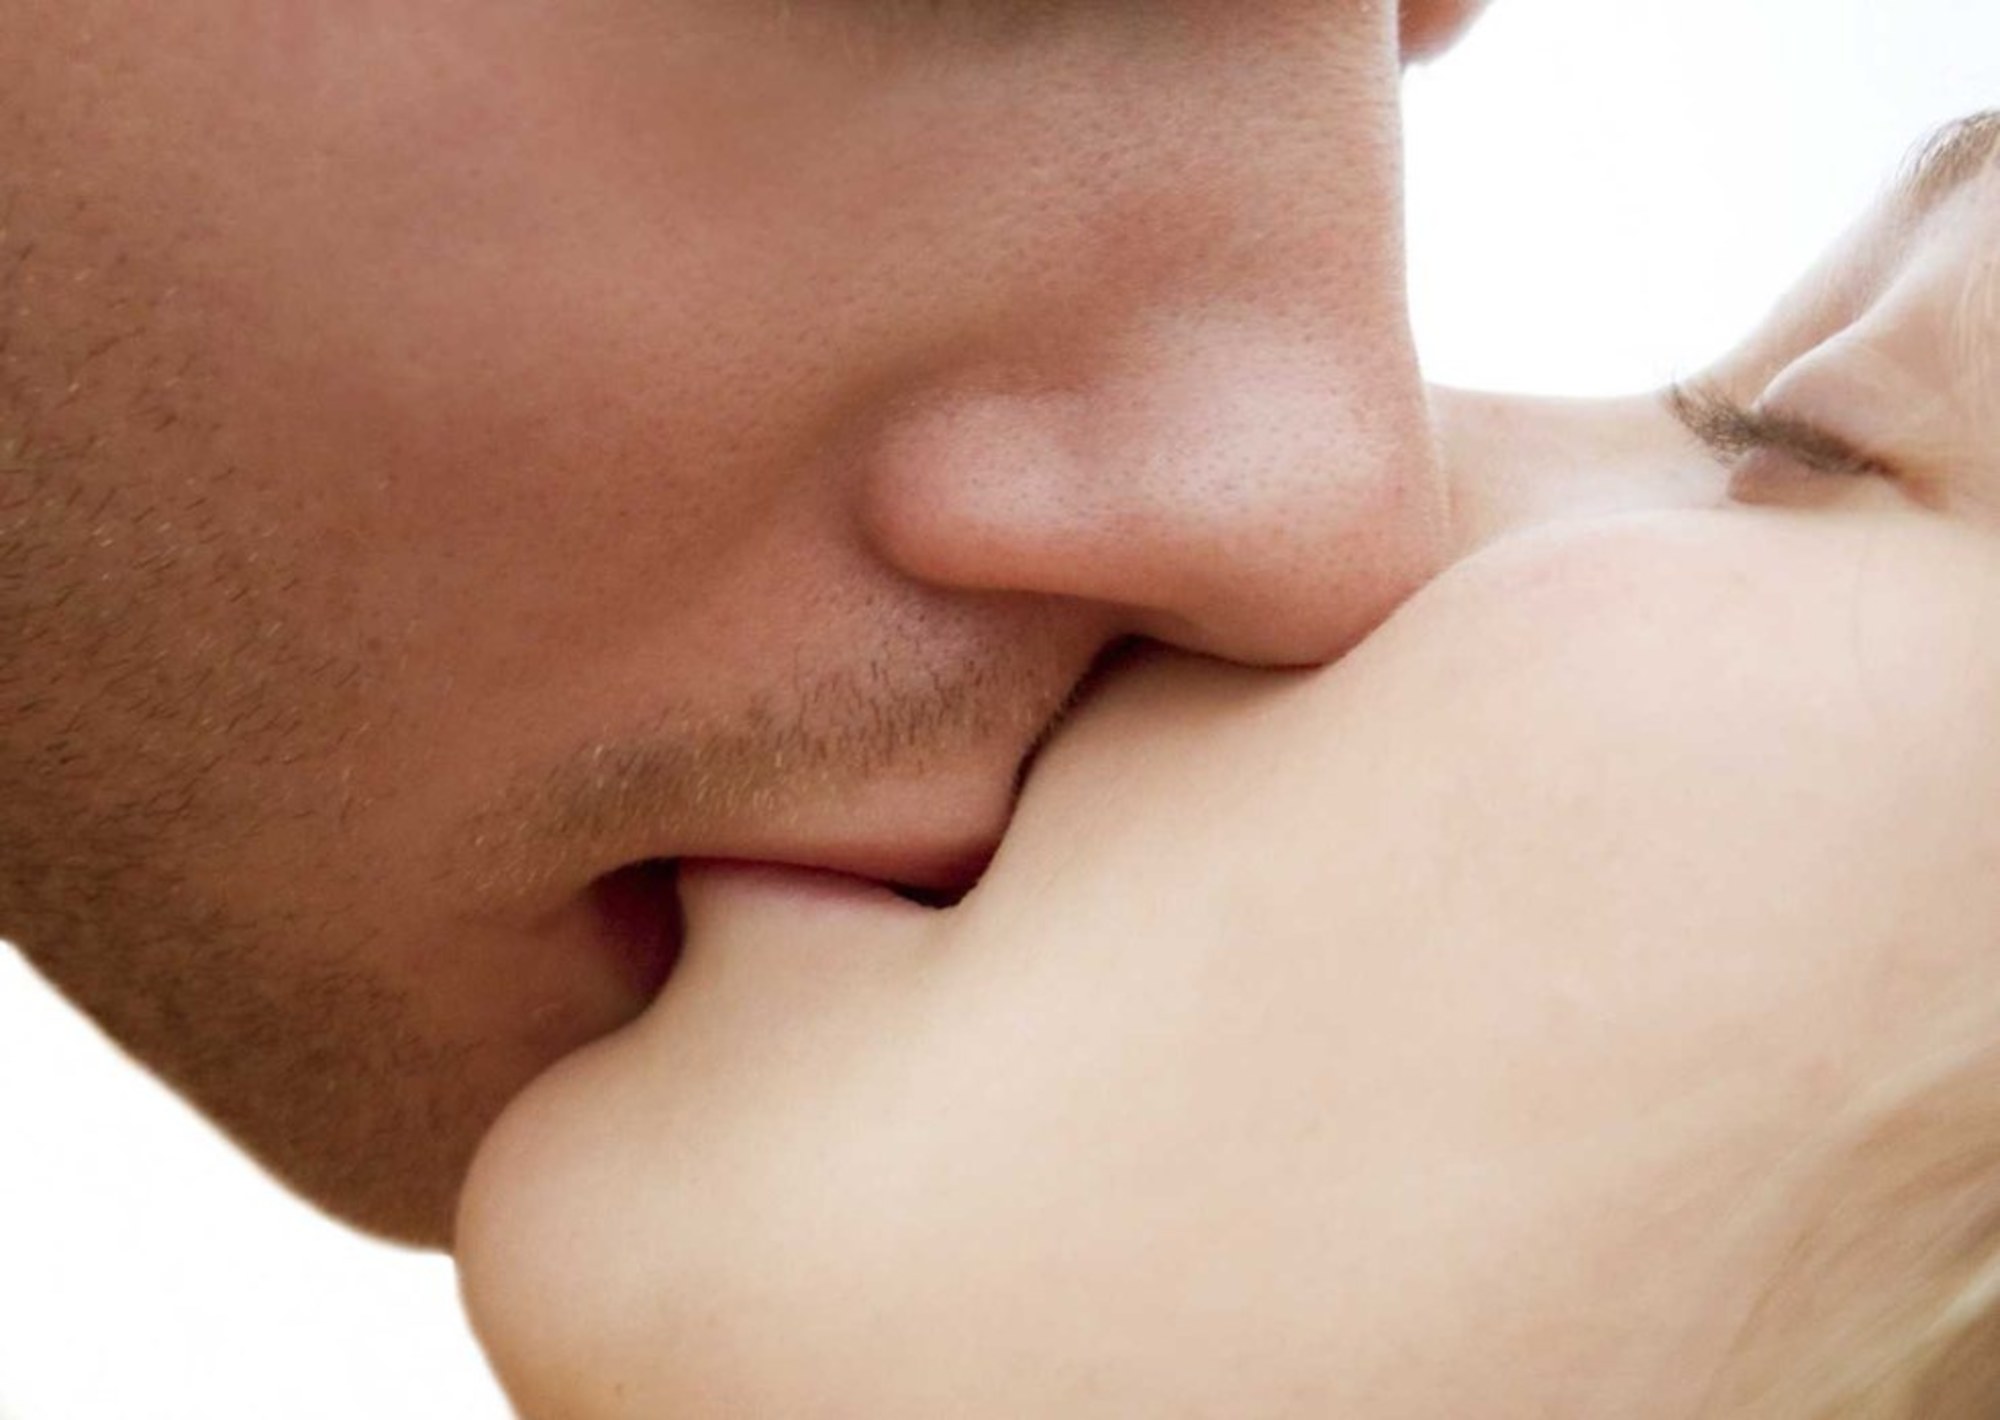 Какие виды поцелуев в губы есть: О чем говорят губы. 11 видов поцелуев, которые расскажут об отношениях / НВ